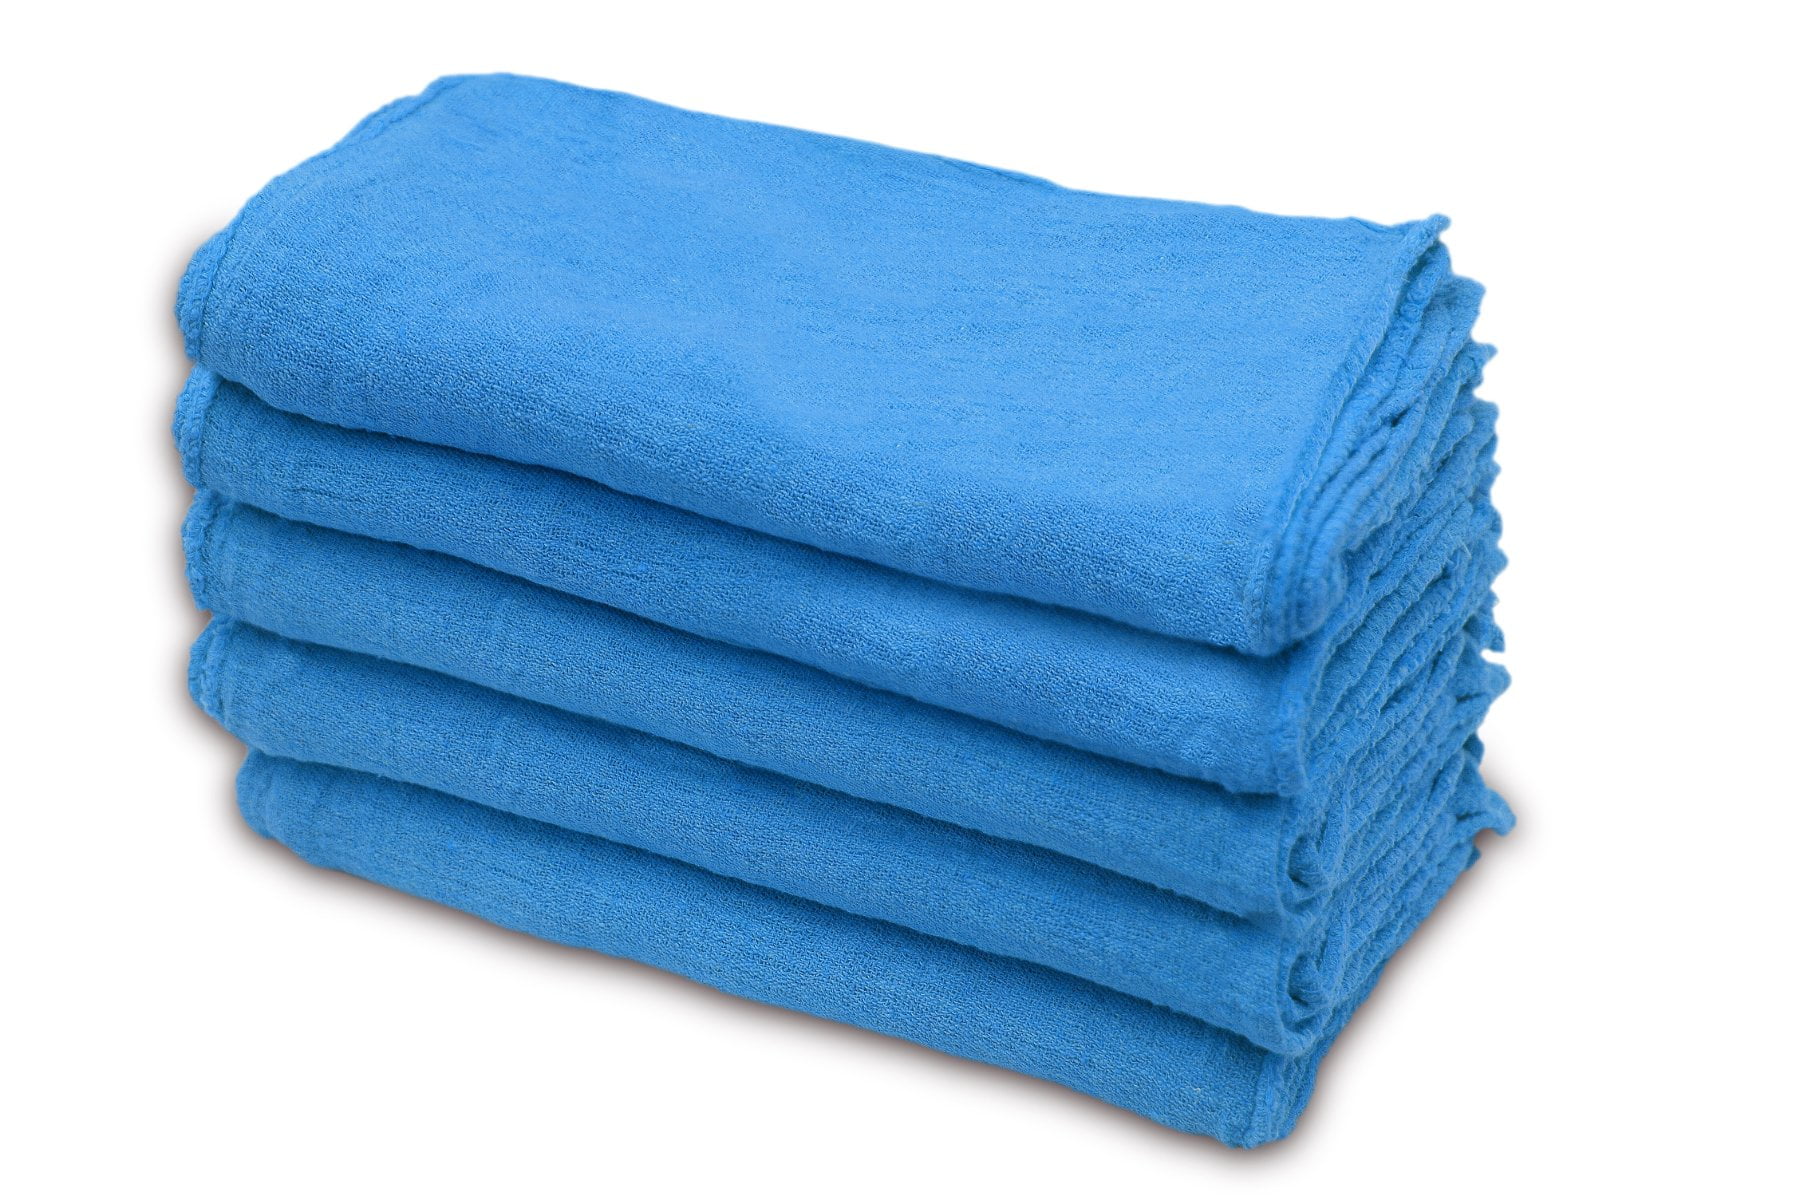 Shop Towels in Bulk, Route Ready Shop Towels